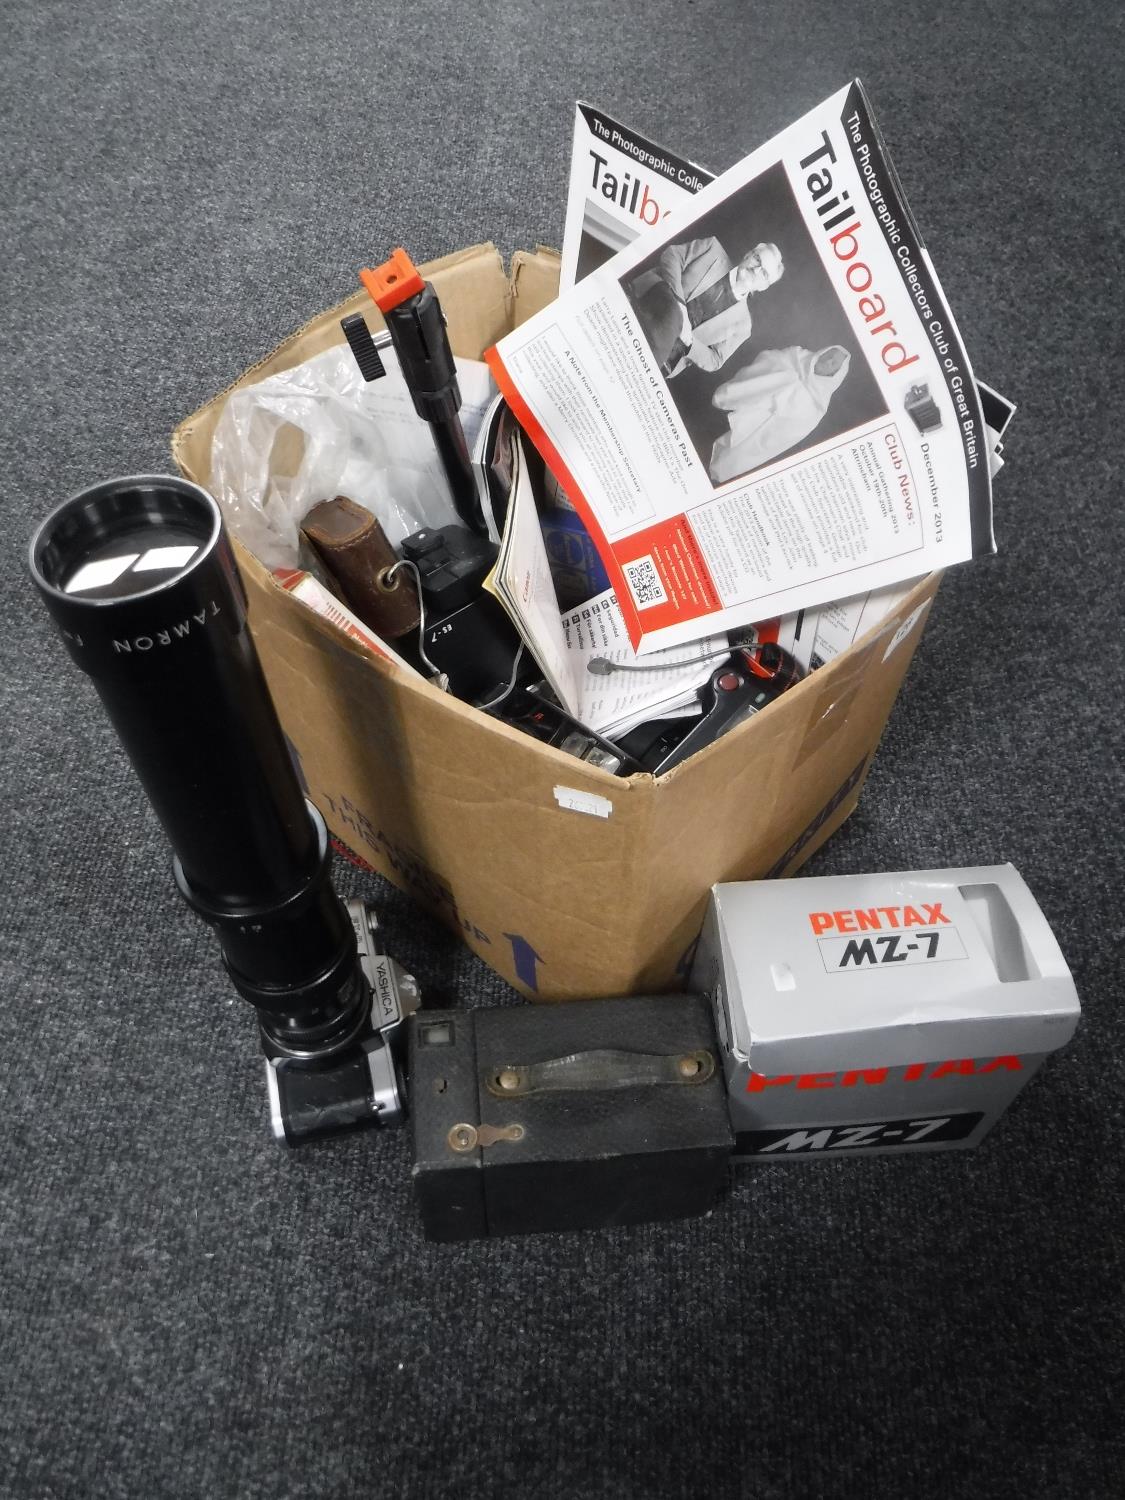 A box of cameras including Yashica, Pentax etc,